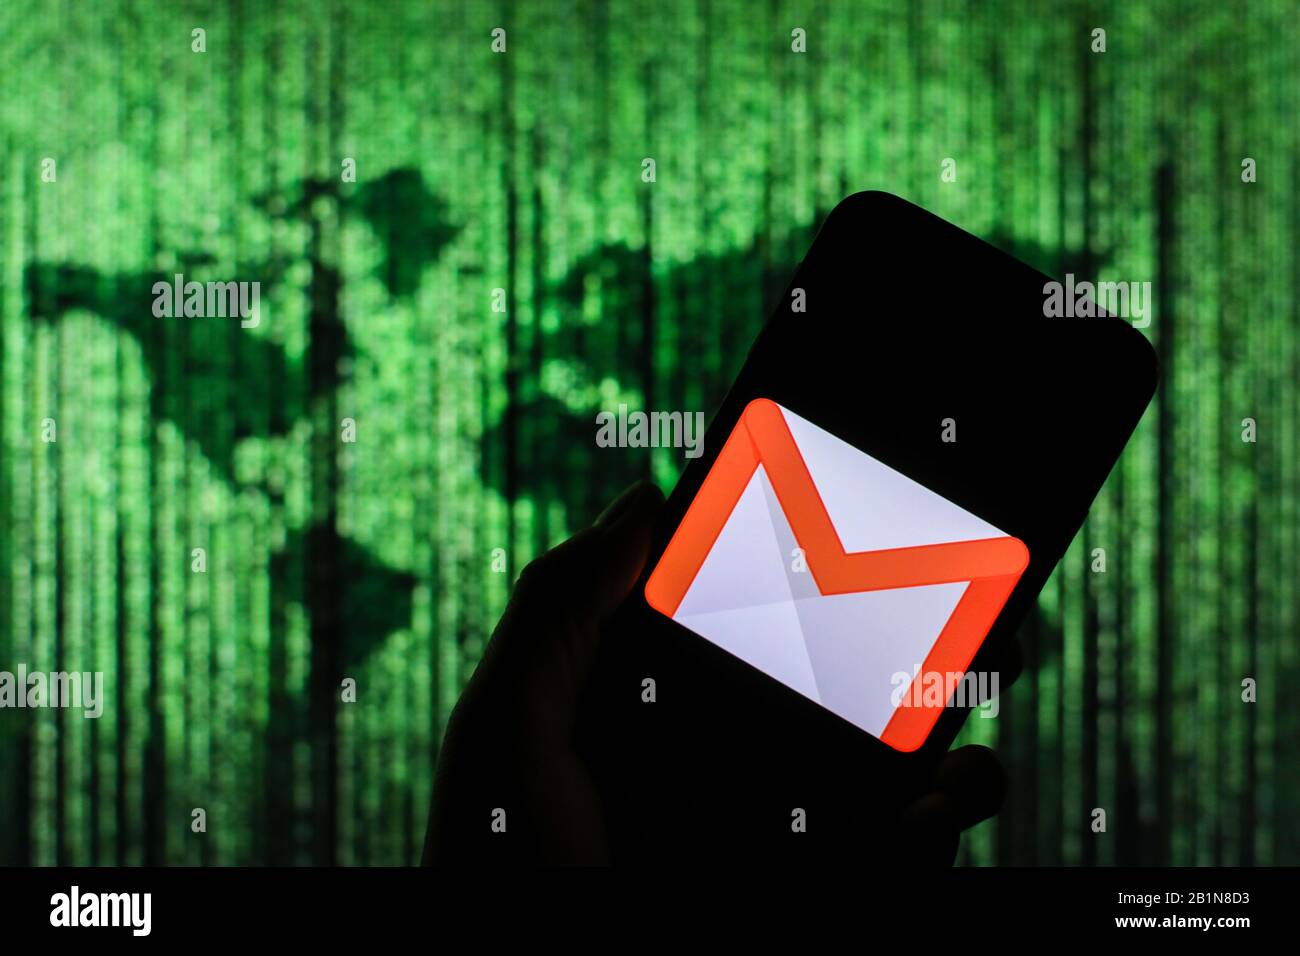 Logo Google Gmail affiché sur l'écran du smartphone avec une carte du monde de type matrice visible floue en arrière-plan Banque D'Images